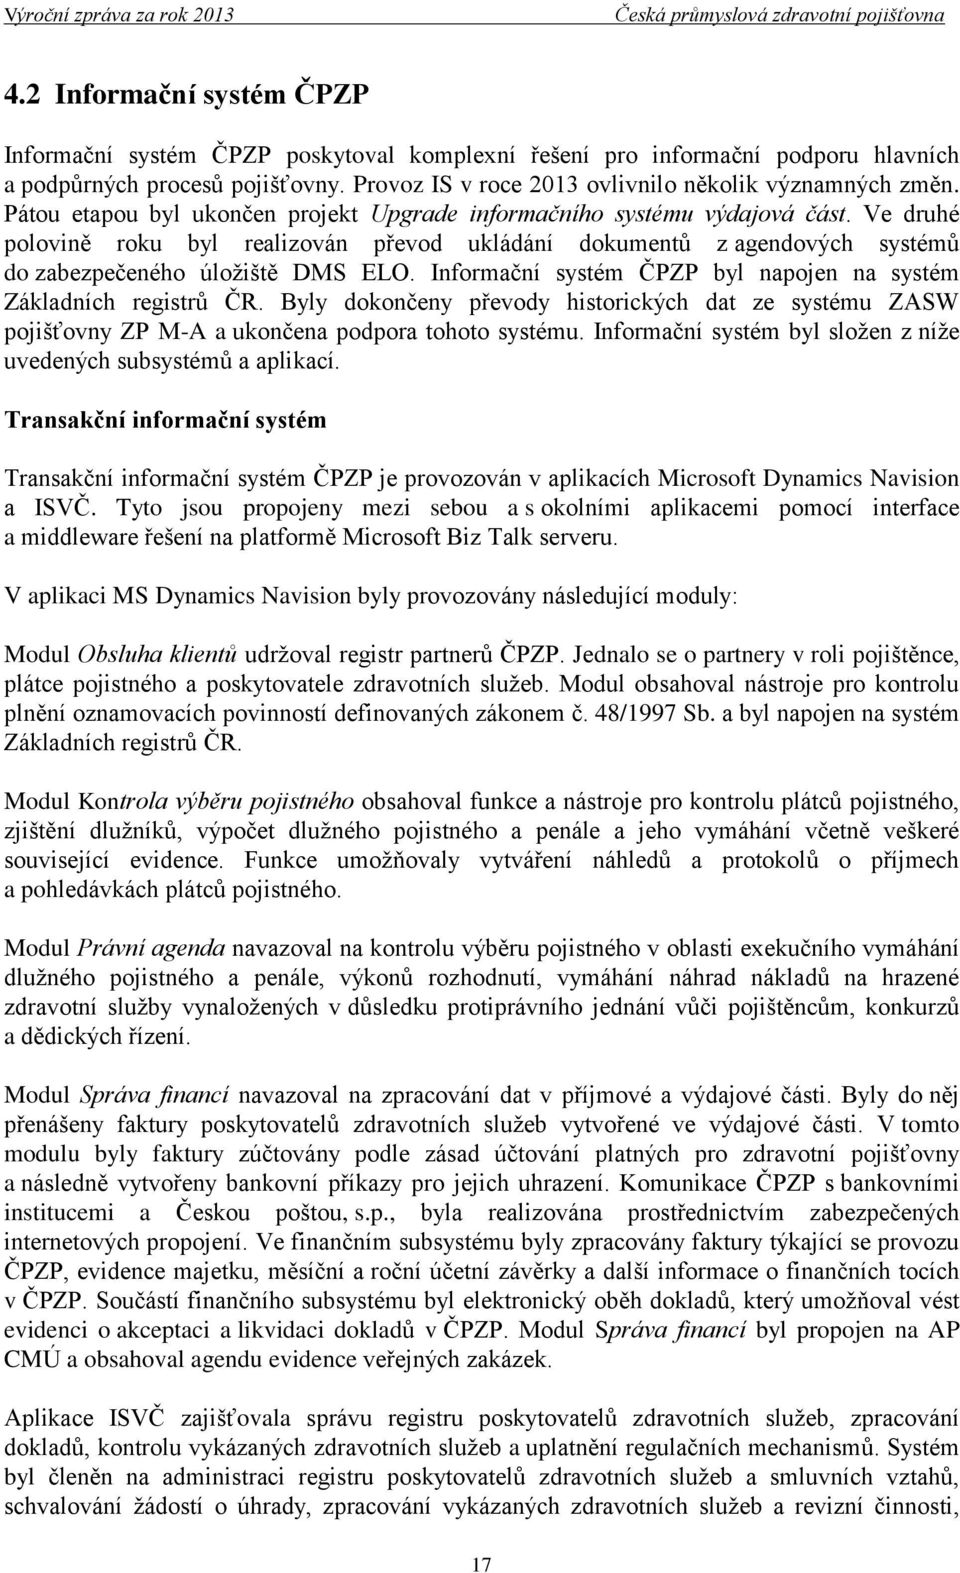 Informační systém ČPZP byl napojen na systém Základních registrů ČR. Byly dokončeny převody historických dat ze systému ZASW pojišťovny ZP M-A a ukončena podpora tohoto systému.